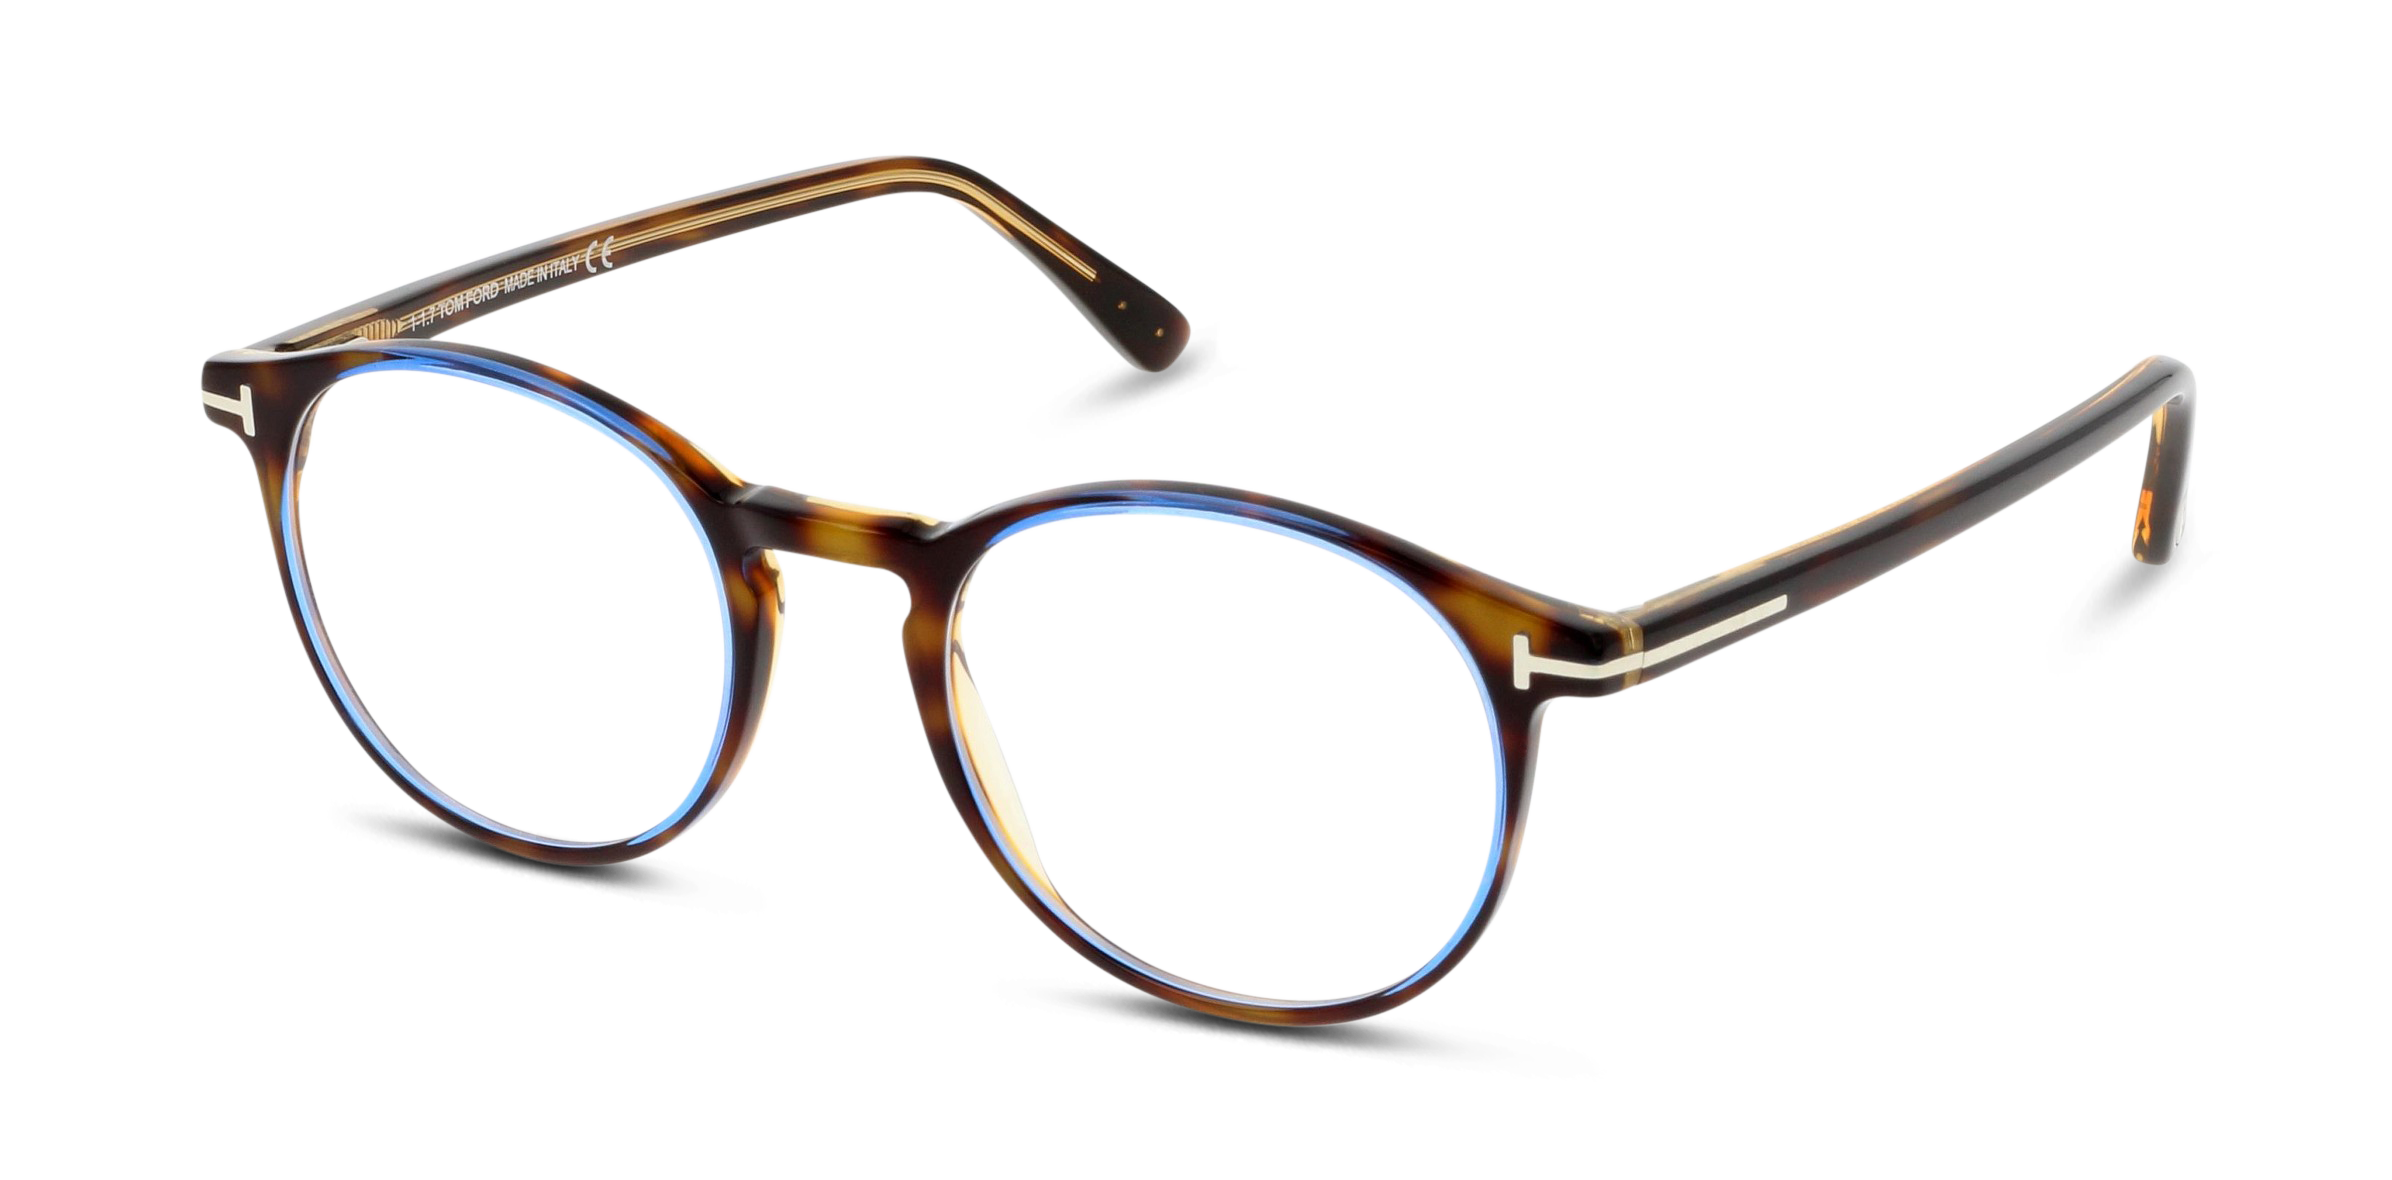 Angle_Left01 Tom Ford FT 5294 Glasses Transparent / Tortoise Shell